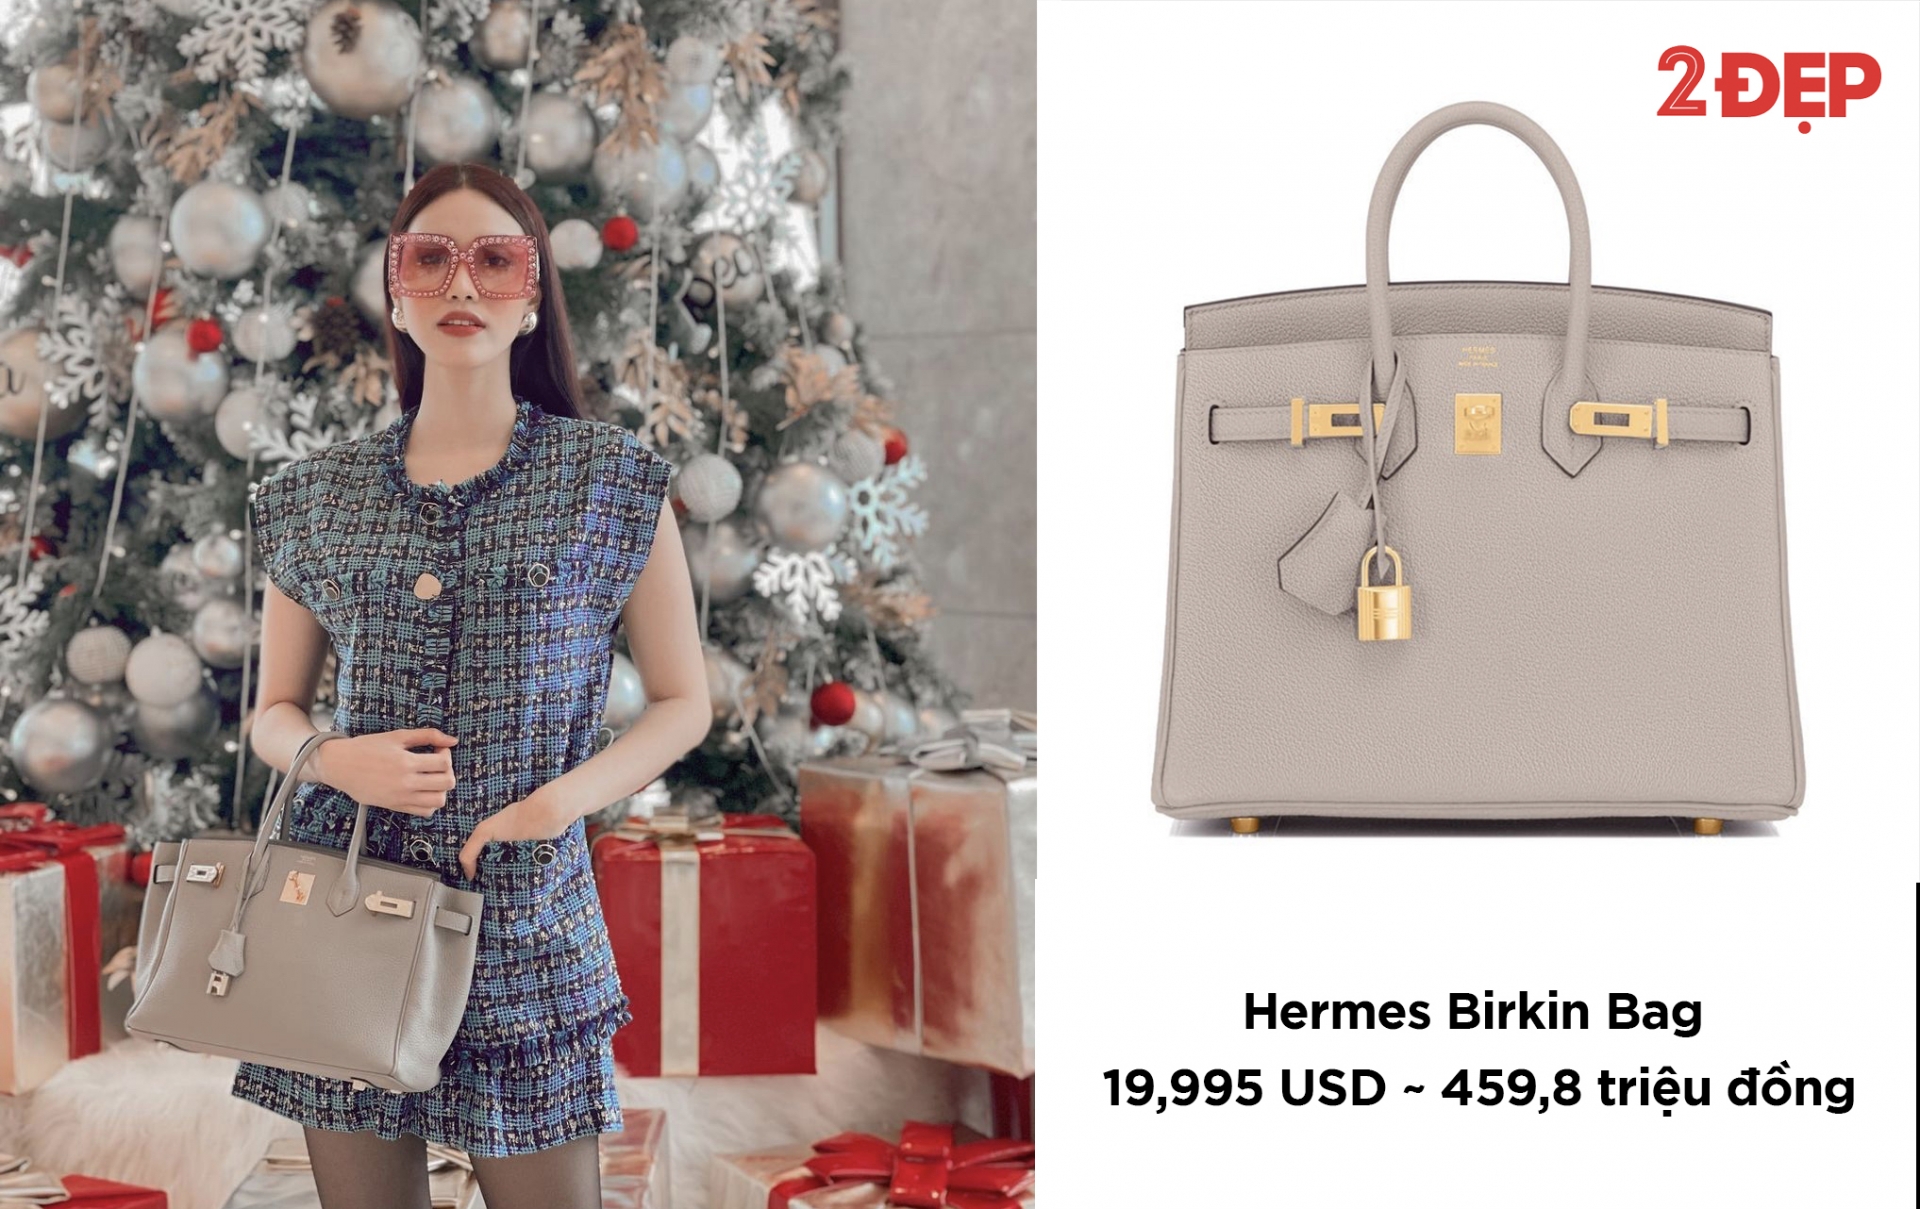 Túi Hermes Birkin cũng không nằm ngoài tầm ngắm của nữ siêu mẫu. Cô nàng ưu ái cho kích thước trung vừa thanh lịch vừa tiện dụng.